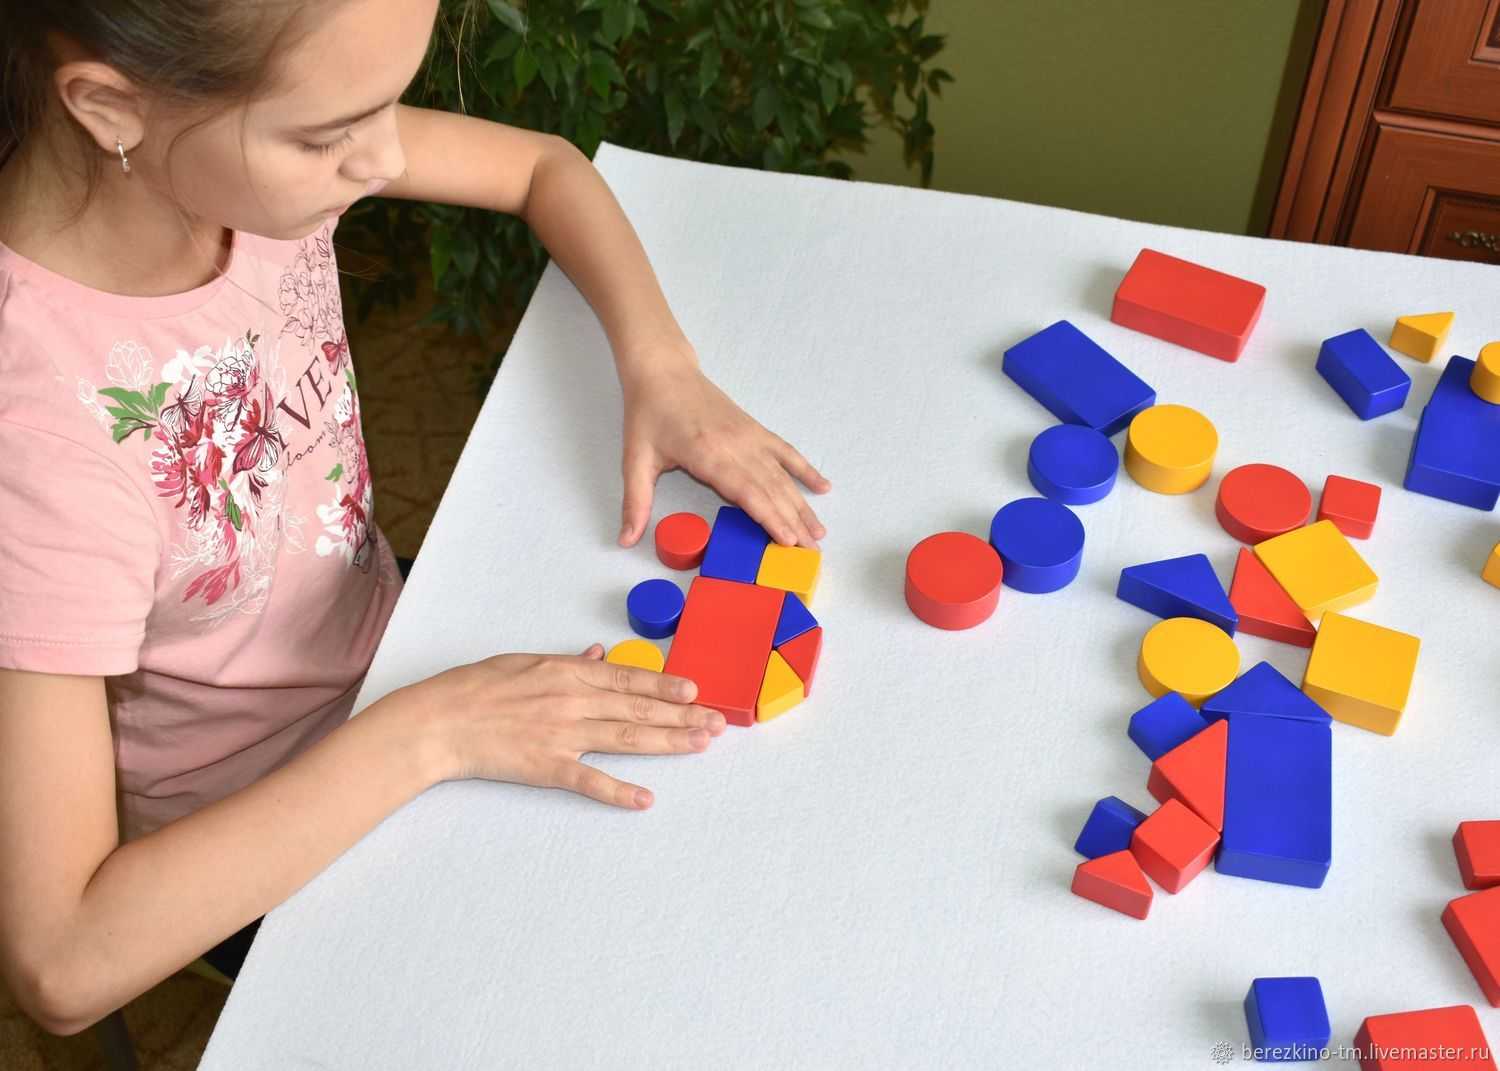 Развить у ребенка логику, умение мыслить нестандартно помогут игры с логическими блоками Дьенеша Они разнообразны, могут использоваться в дошкольном возрасте